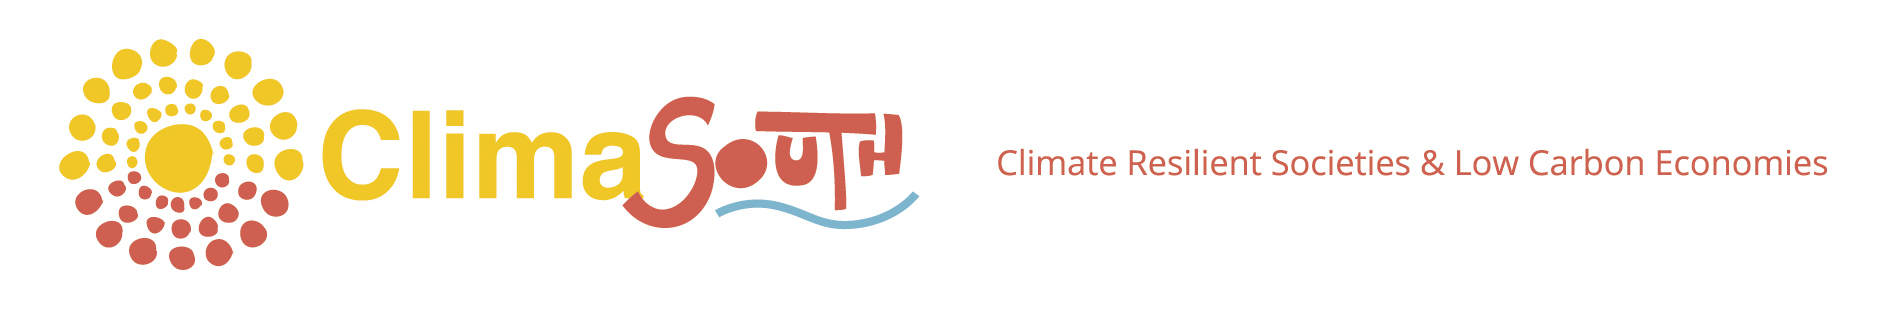 climasouth_logo